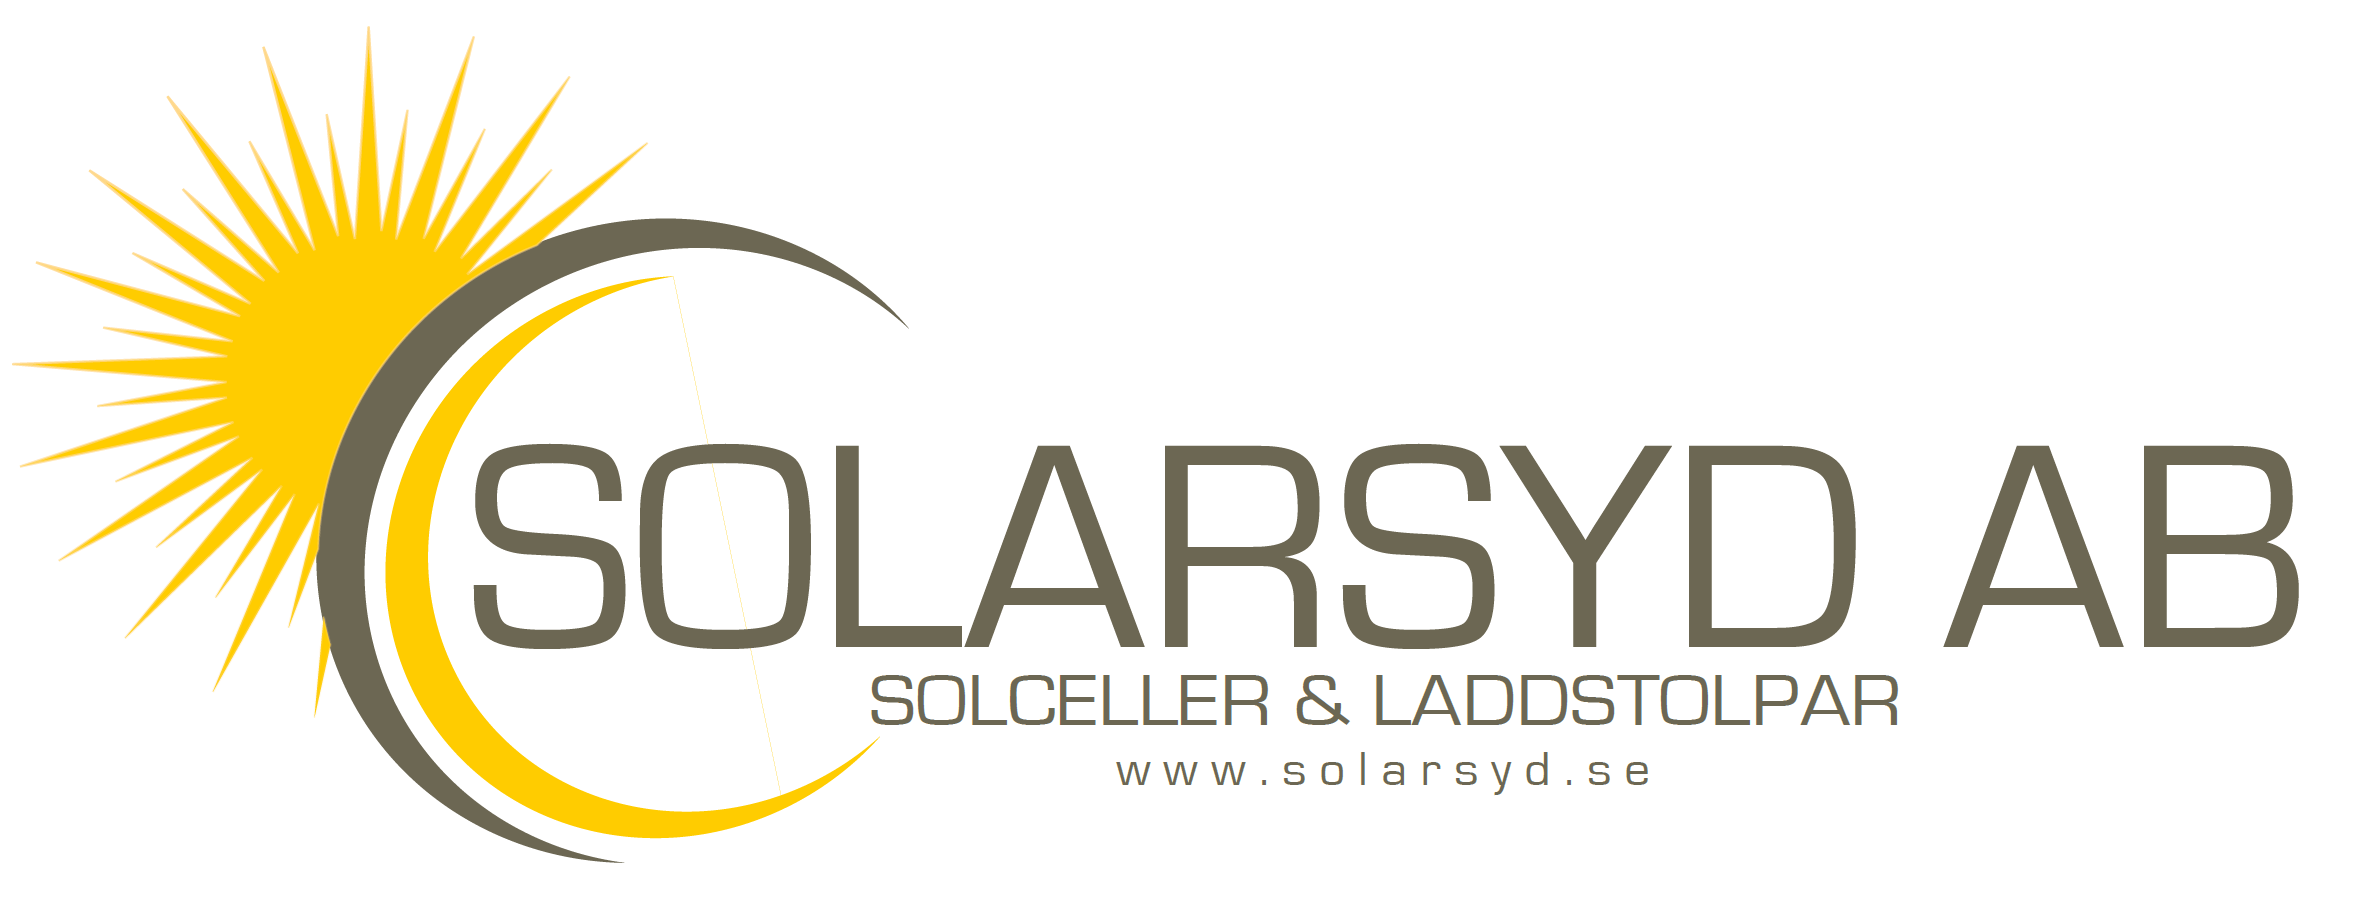 Solarsyd AB